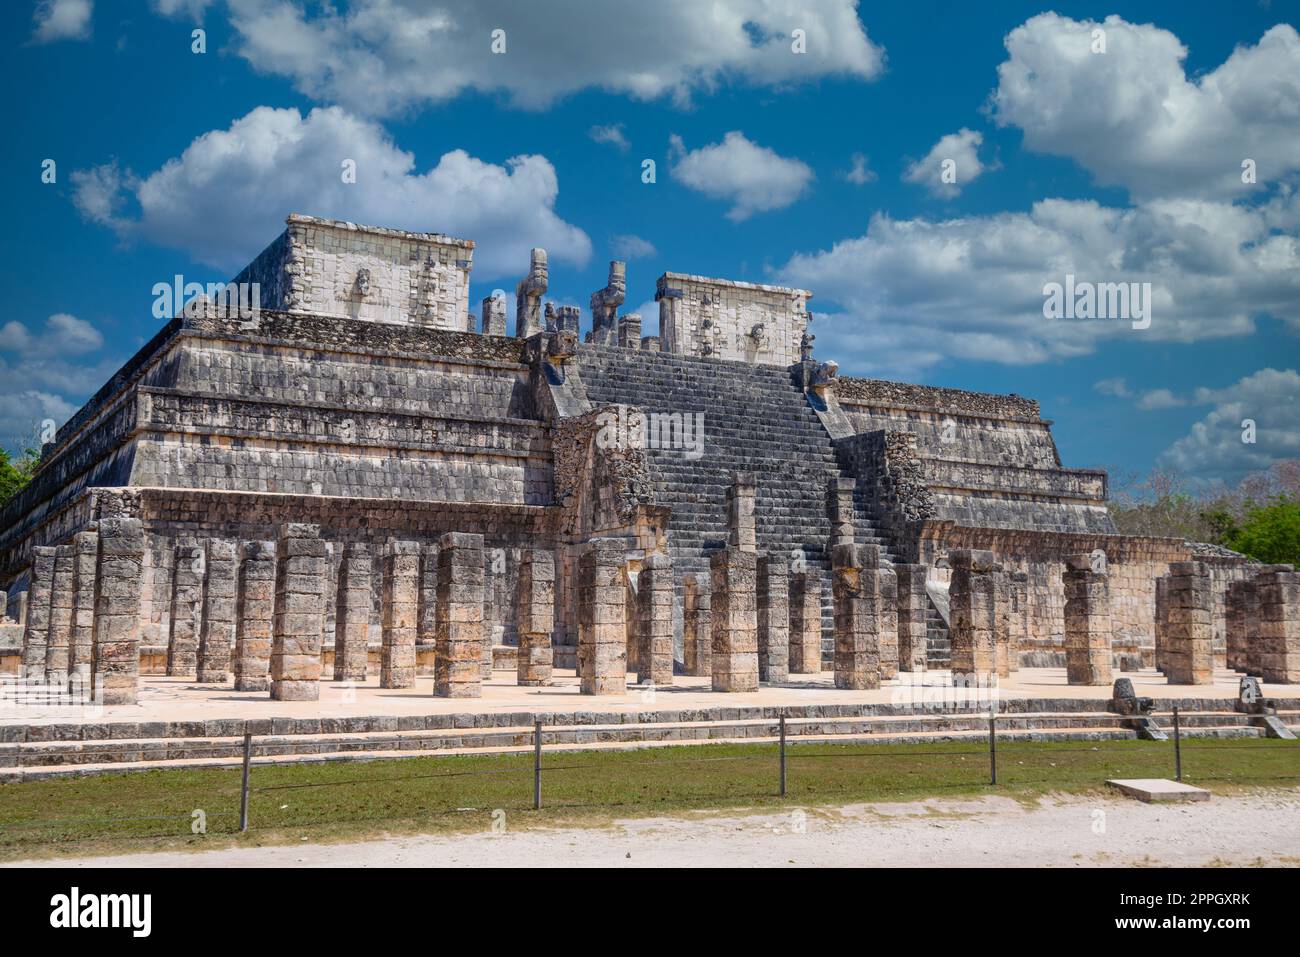 Temple des guerriers à Chichen Itza, Quintana Roo, Mexique. Ruines mayas près de Cancun Banque D'Images